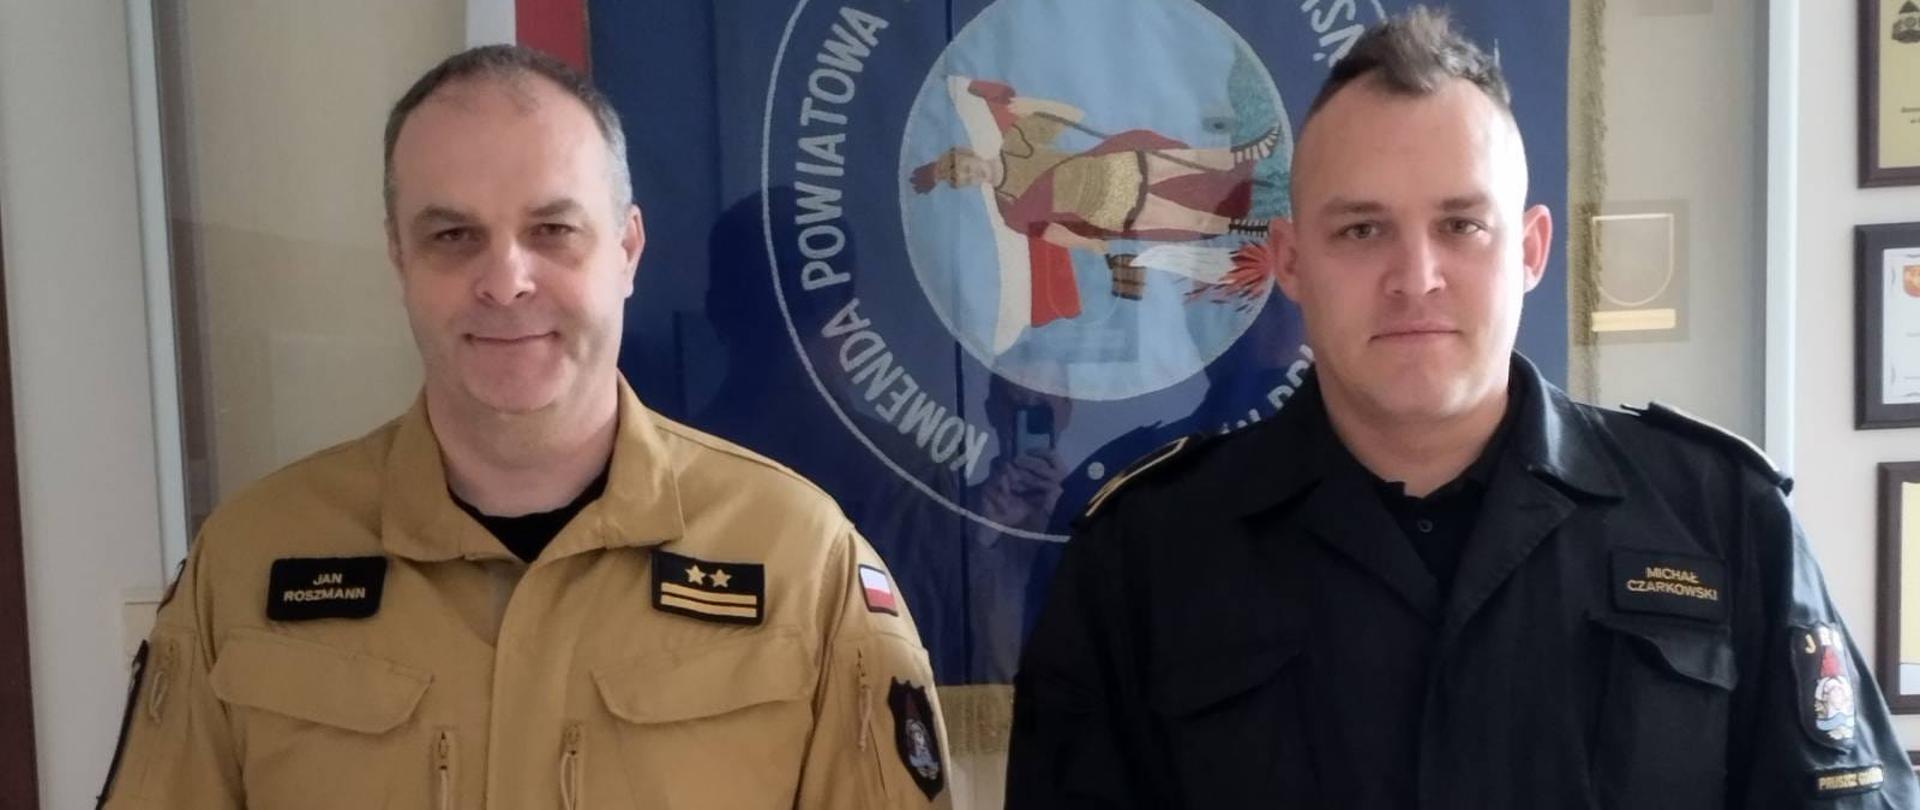 Zdjęcie przedstawia nowo mianowanego zastępcę dowódcy JRG w Pruszczu Gdańskim oraz Komendanta powiatowego PSP w Pruszczu Gdańskim na tle sztandaru Komendy.